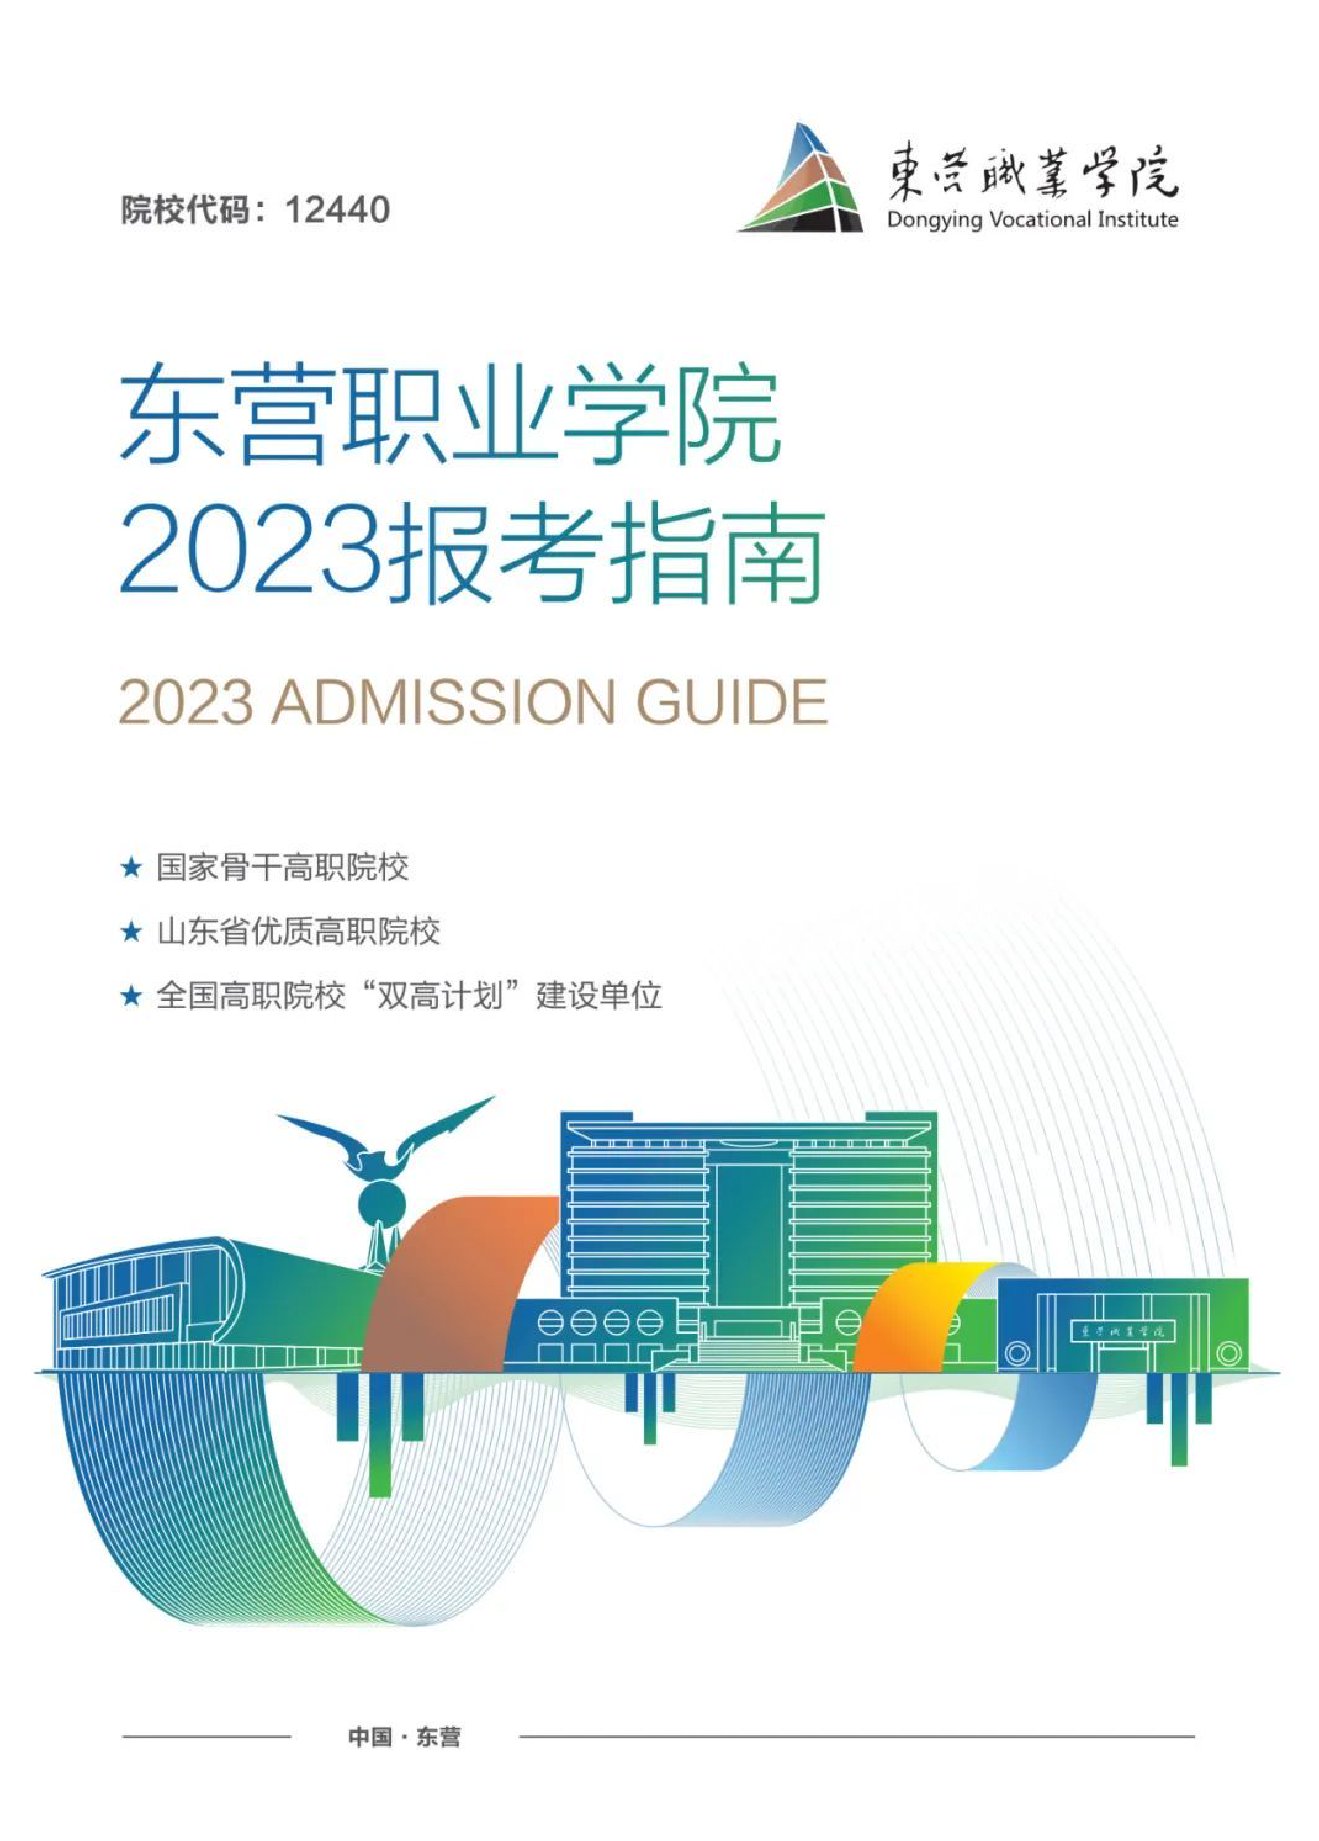 最新发布|东营职业学院2023年报考指南